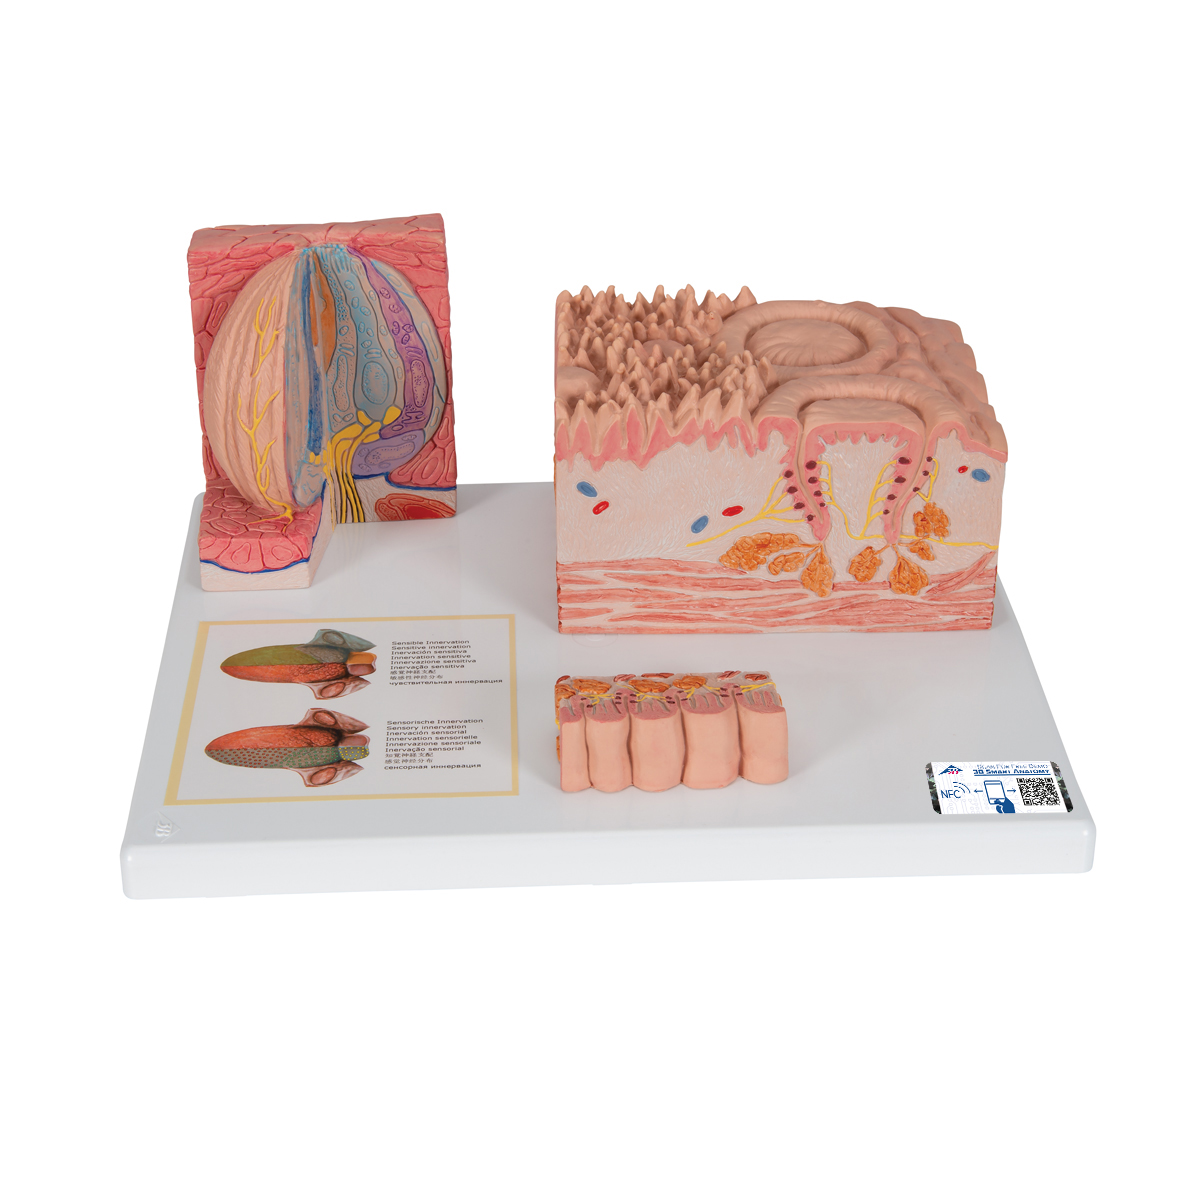 3B MICROanatomie™ Modell Zunge - 3B Smart Anatomy, Bestellnummer 1000247, D17, 3B Scientific